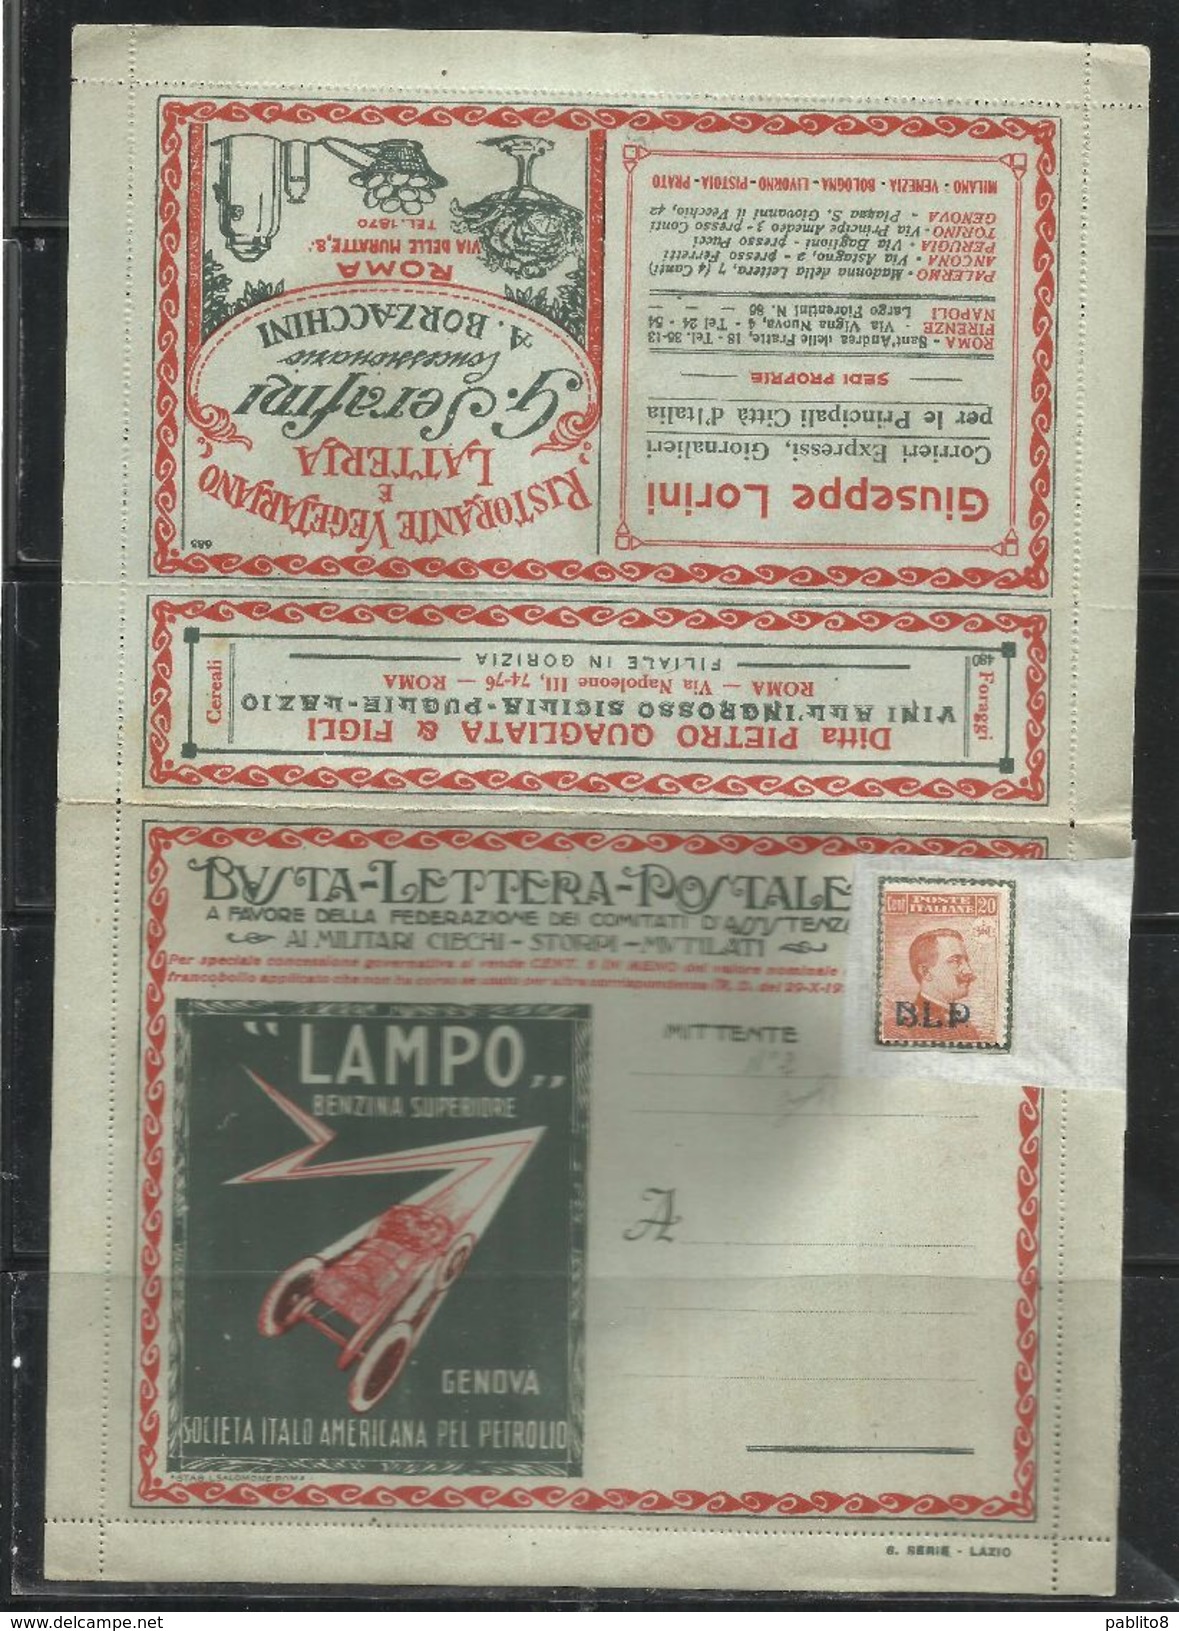 ITALY KINGDOM ITALIA REGNO 1921 BLP Busta Lettera Postale 20 Cent. Pubblicità LAMPO NUOVA FIRMATA UNUSED SIGNED - Francobolli Per Buste Pubblicitarie (BLP)